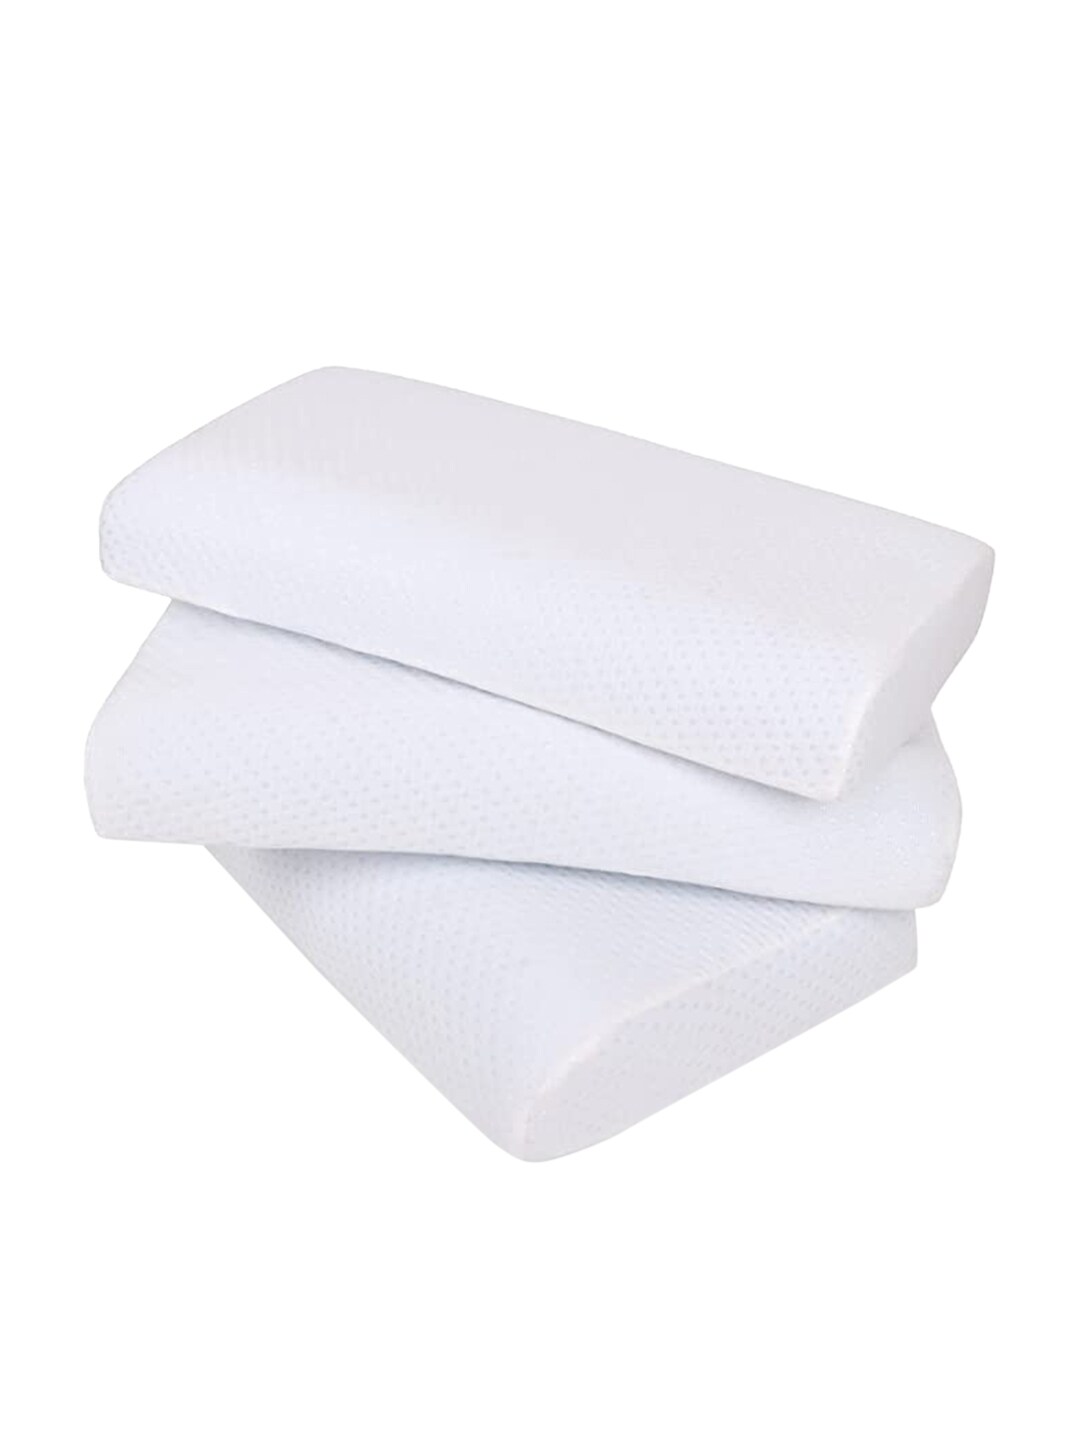 Sleepsia Set of 3  White Solid Cotton Therapedic Pillows Price in India